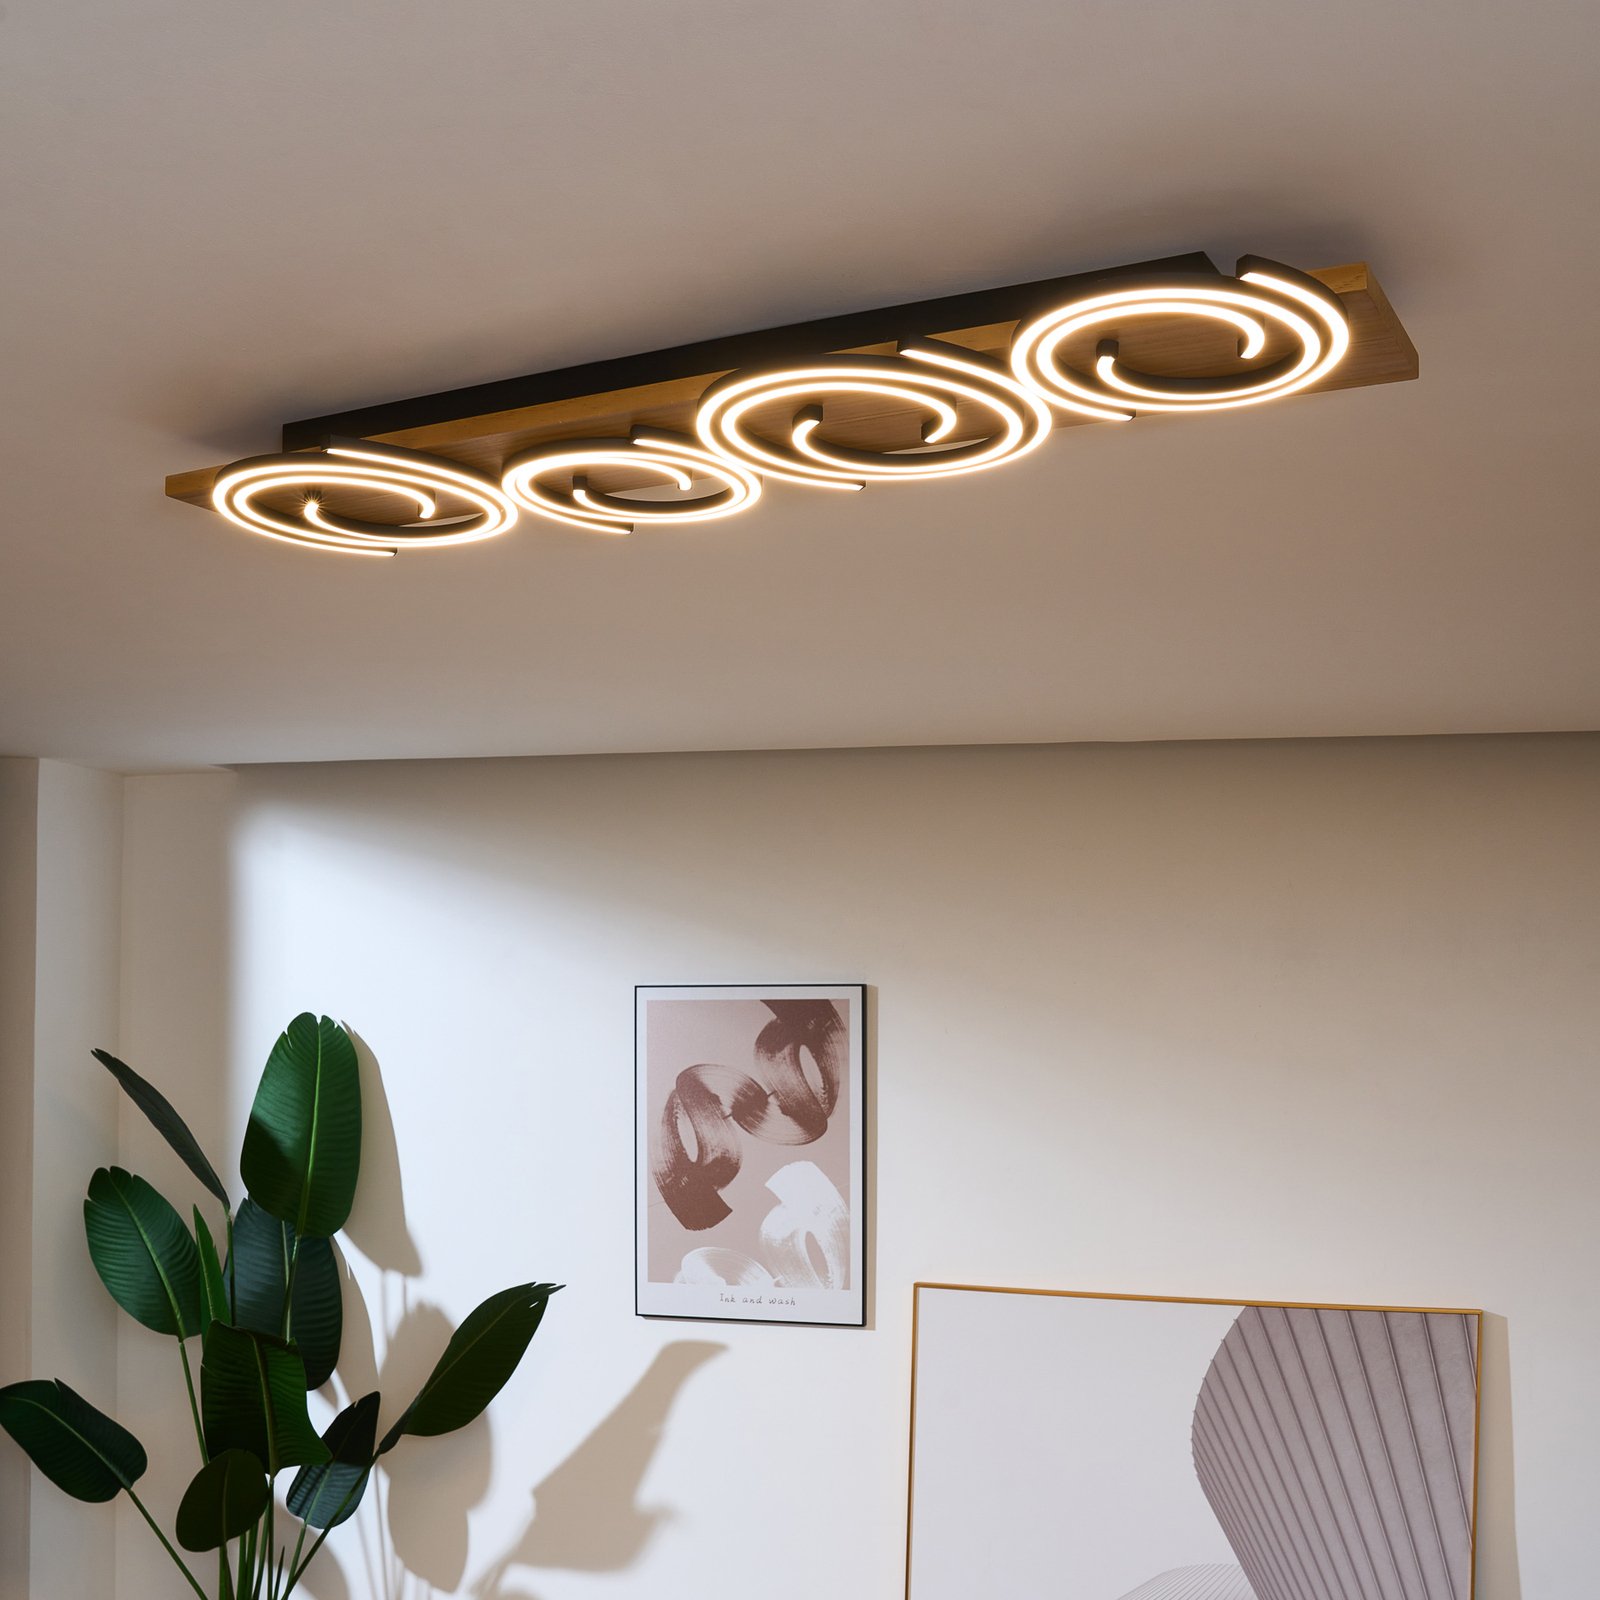 Stropné svietidlo LED Rifia, hnedá farba, dĺžka 115 cm, 4 svetlá, drevo